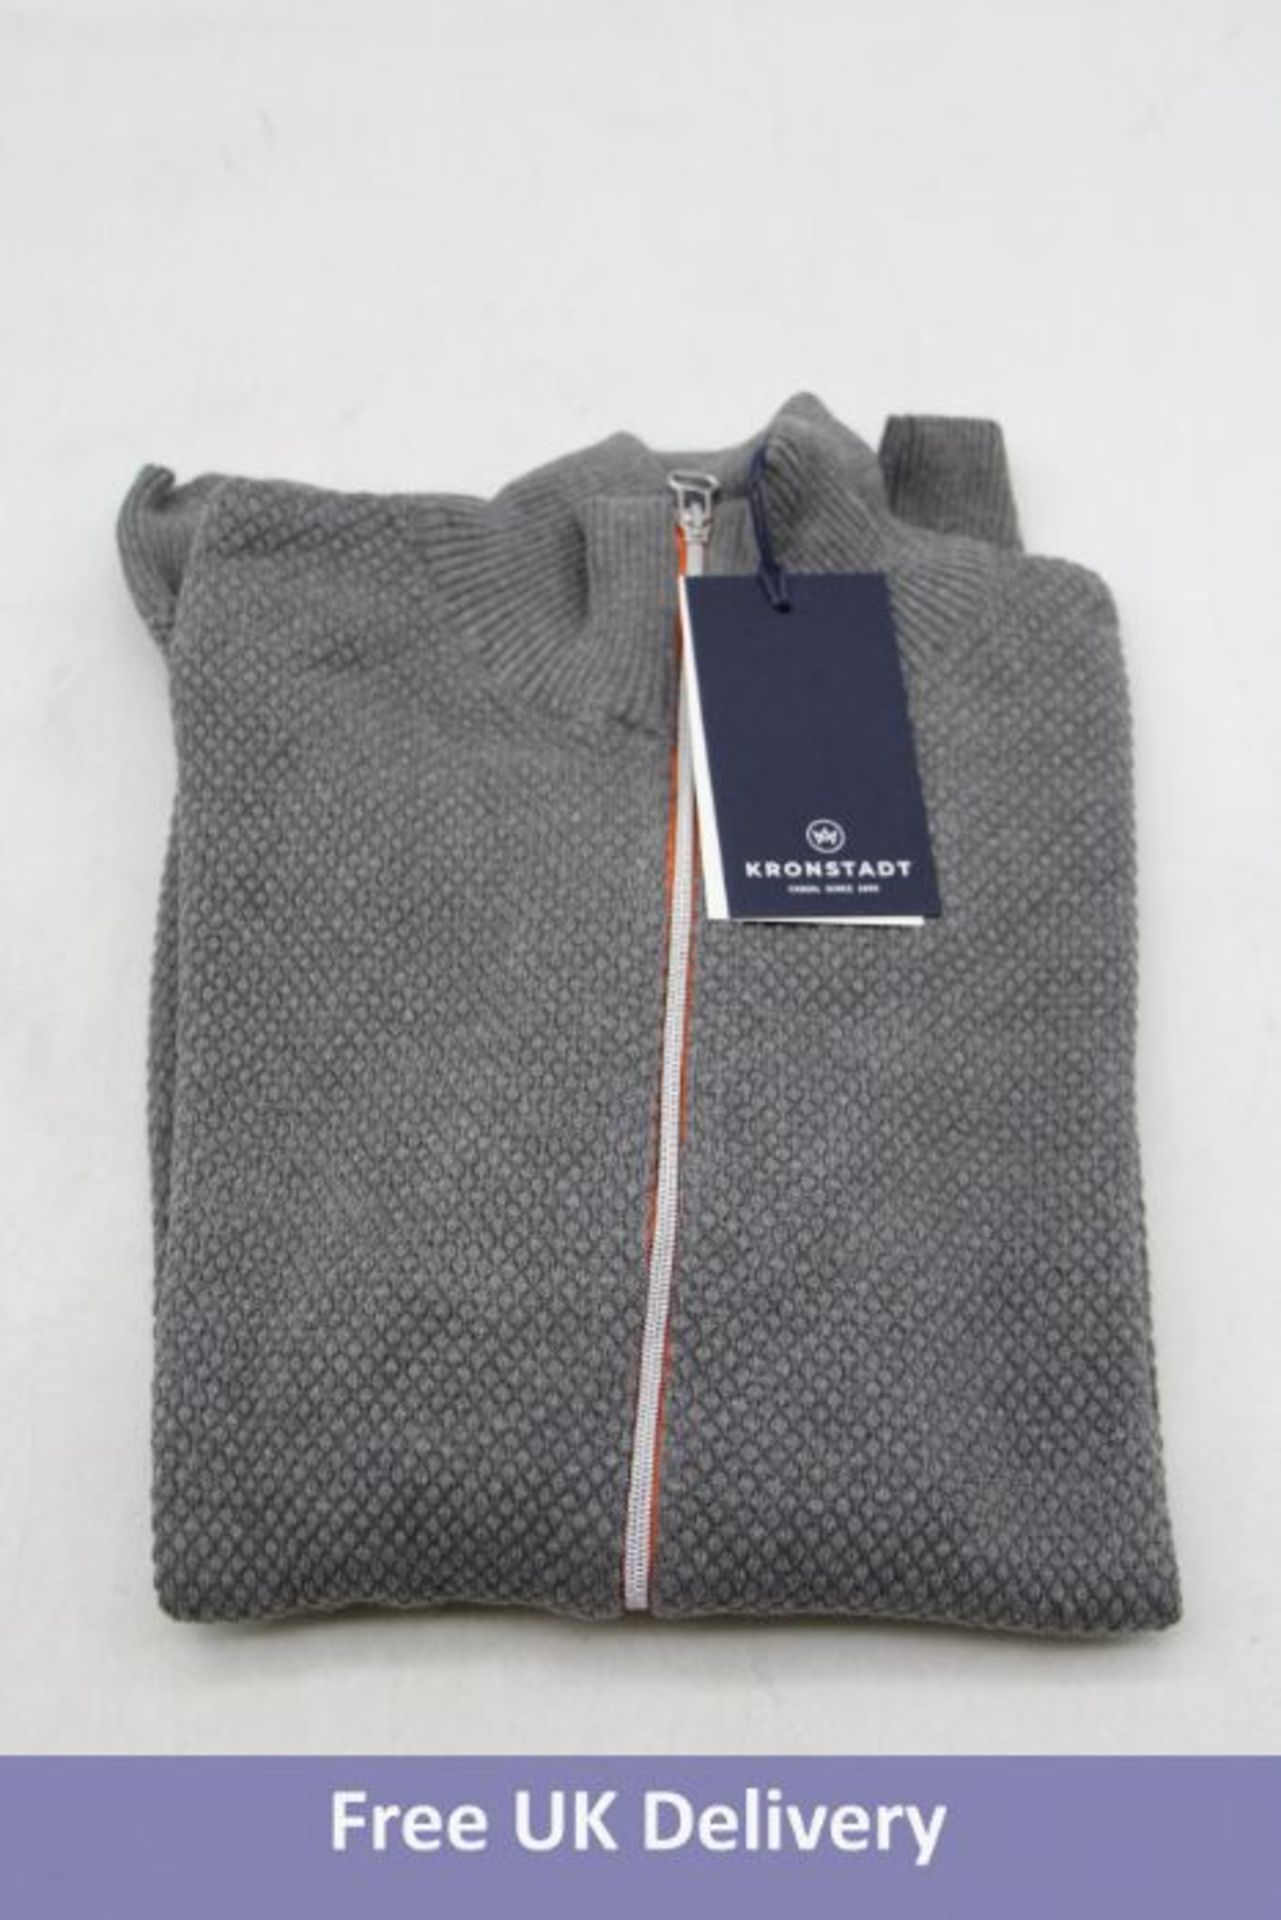 Four Kronstadt Erlk Zip Cardigan/Sweater, Grey/Orange Zip, Size XL - Image 4 of 4